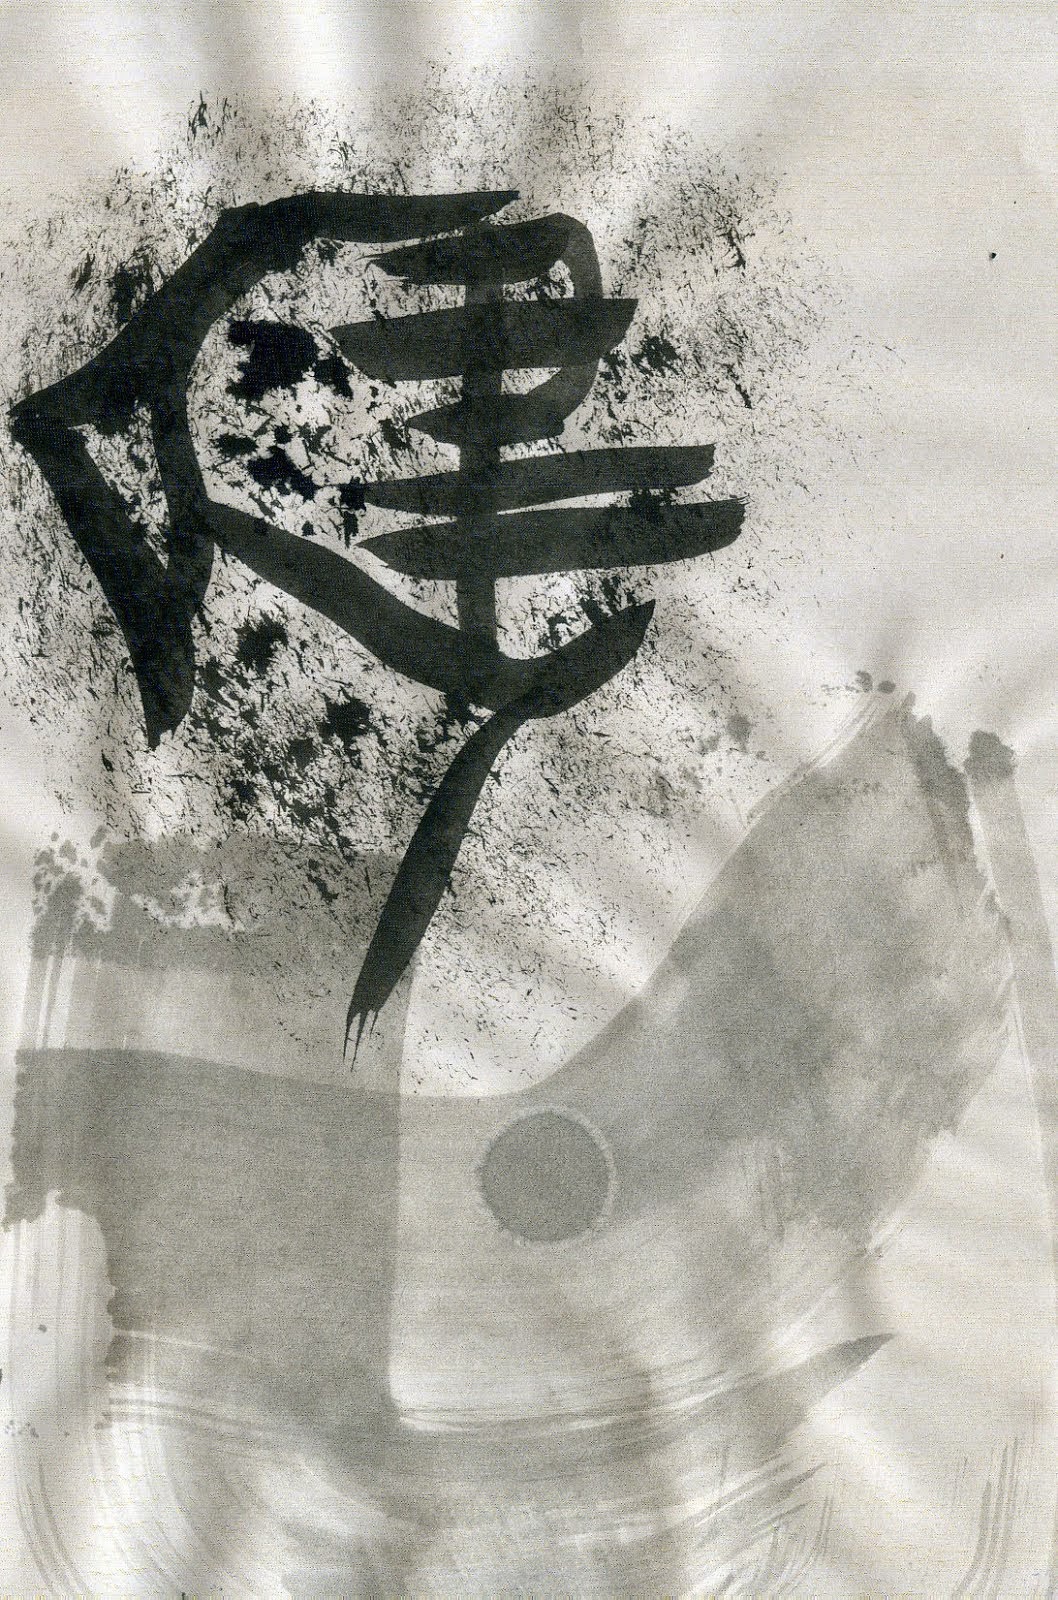 caligrafía china creativa o experimental